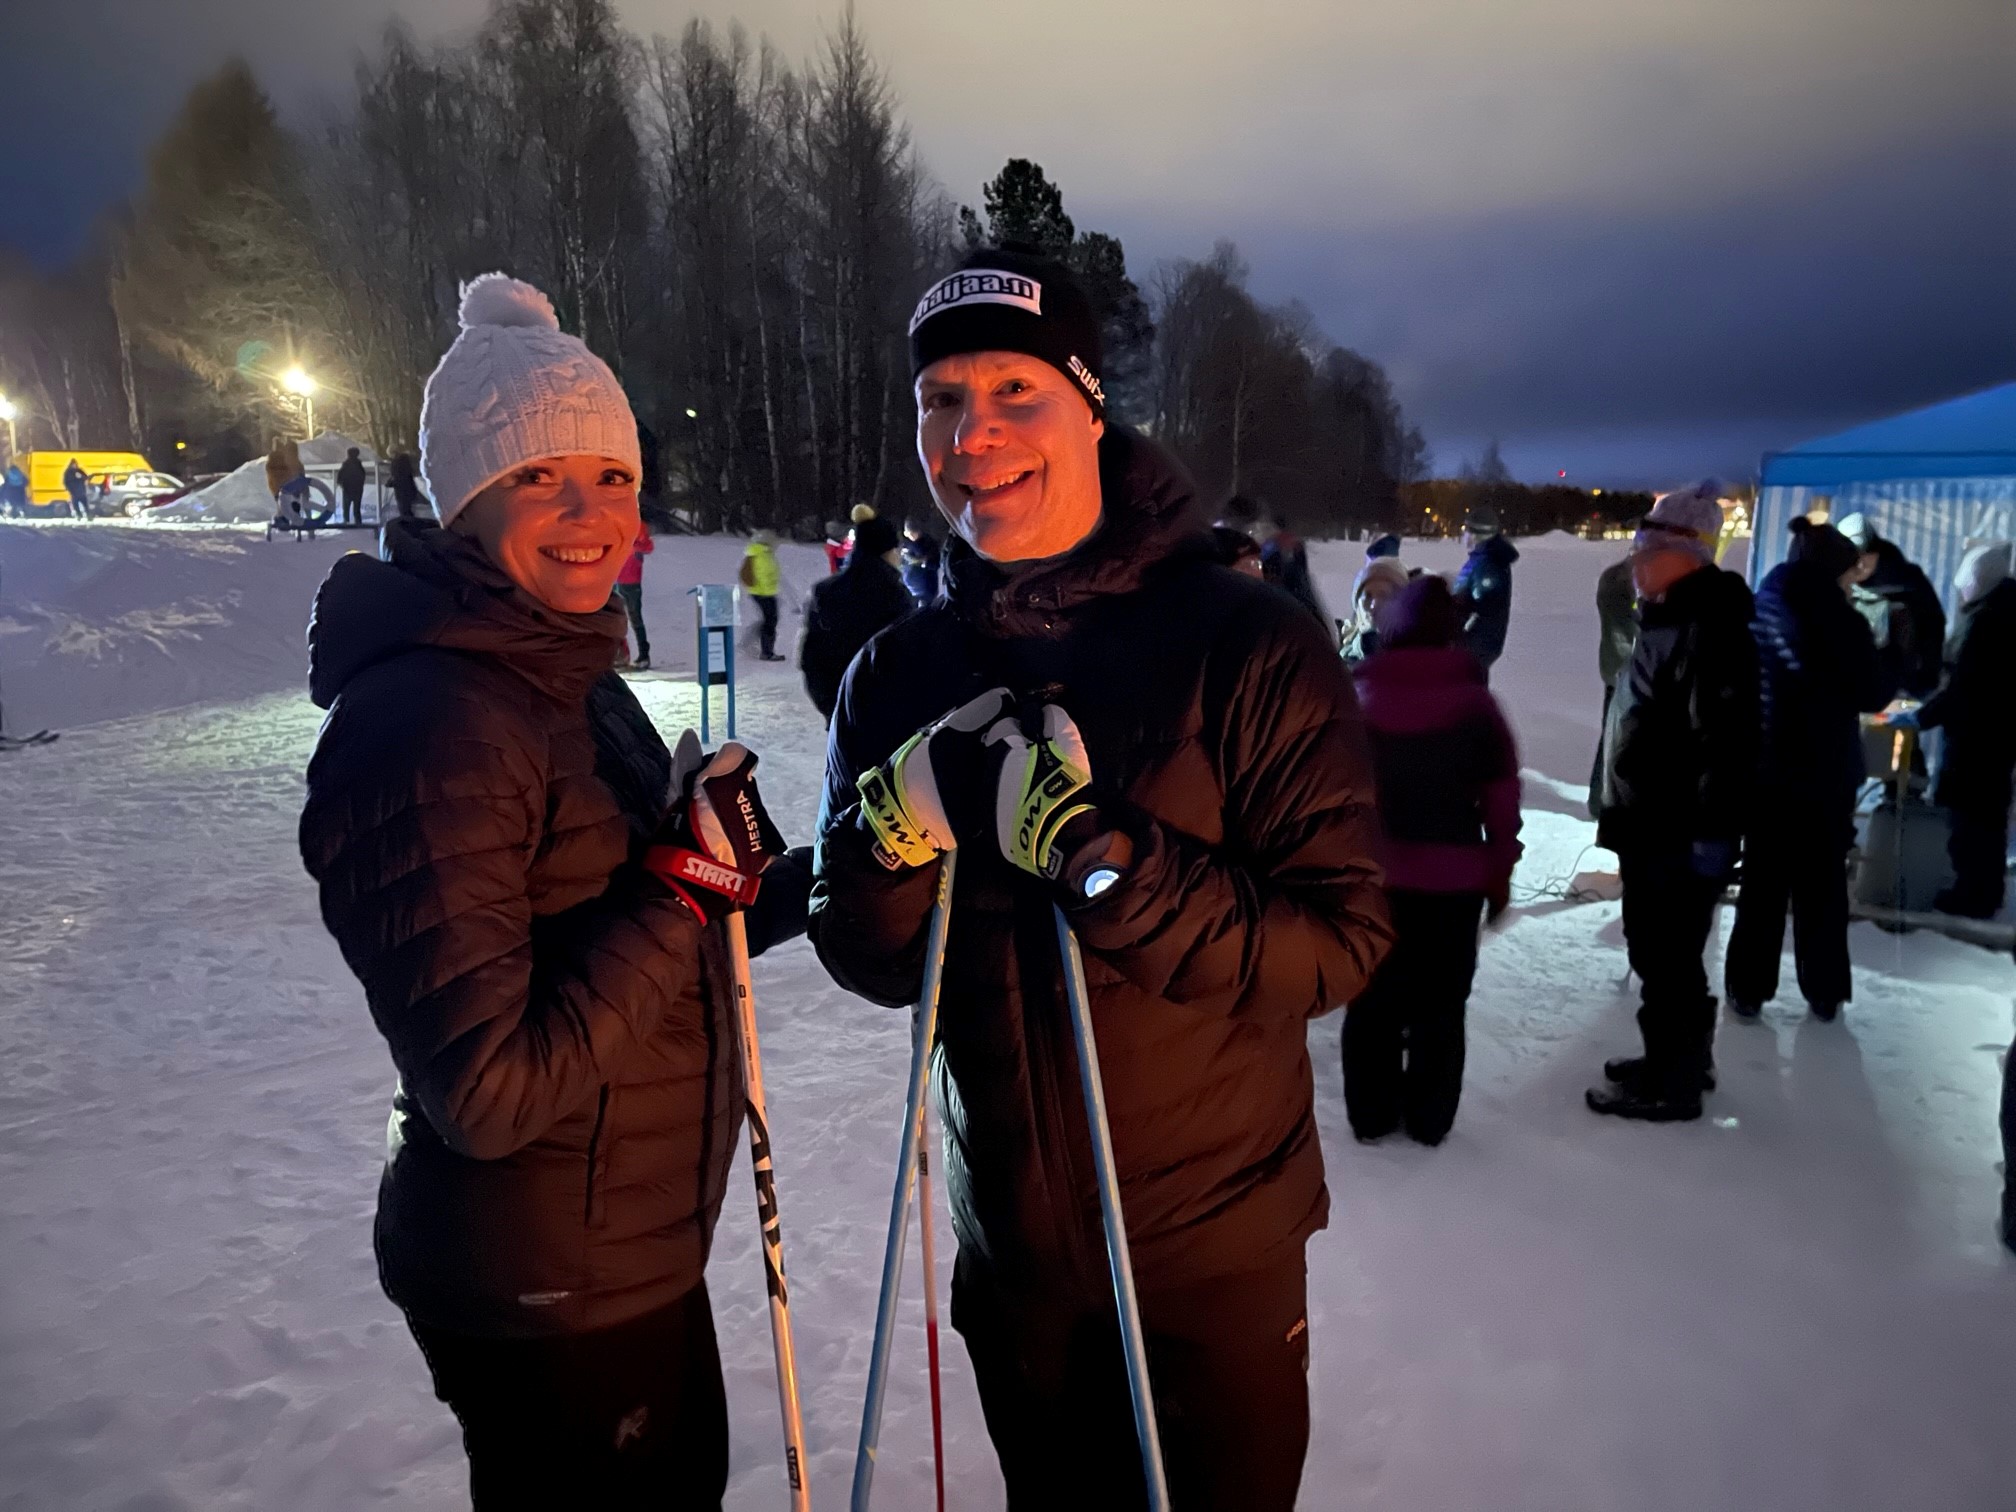 Posion kunnanjohtaja Pekka Jääskö piti pienen puheen Kuutamohiihtojen alkajaisiksi ja lähti sitten 5 kilometrin lenkille vaimonsa Susanna Jääskön kanssa.